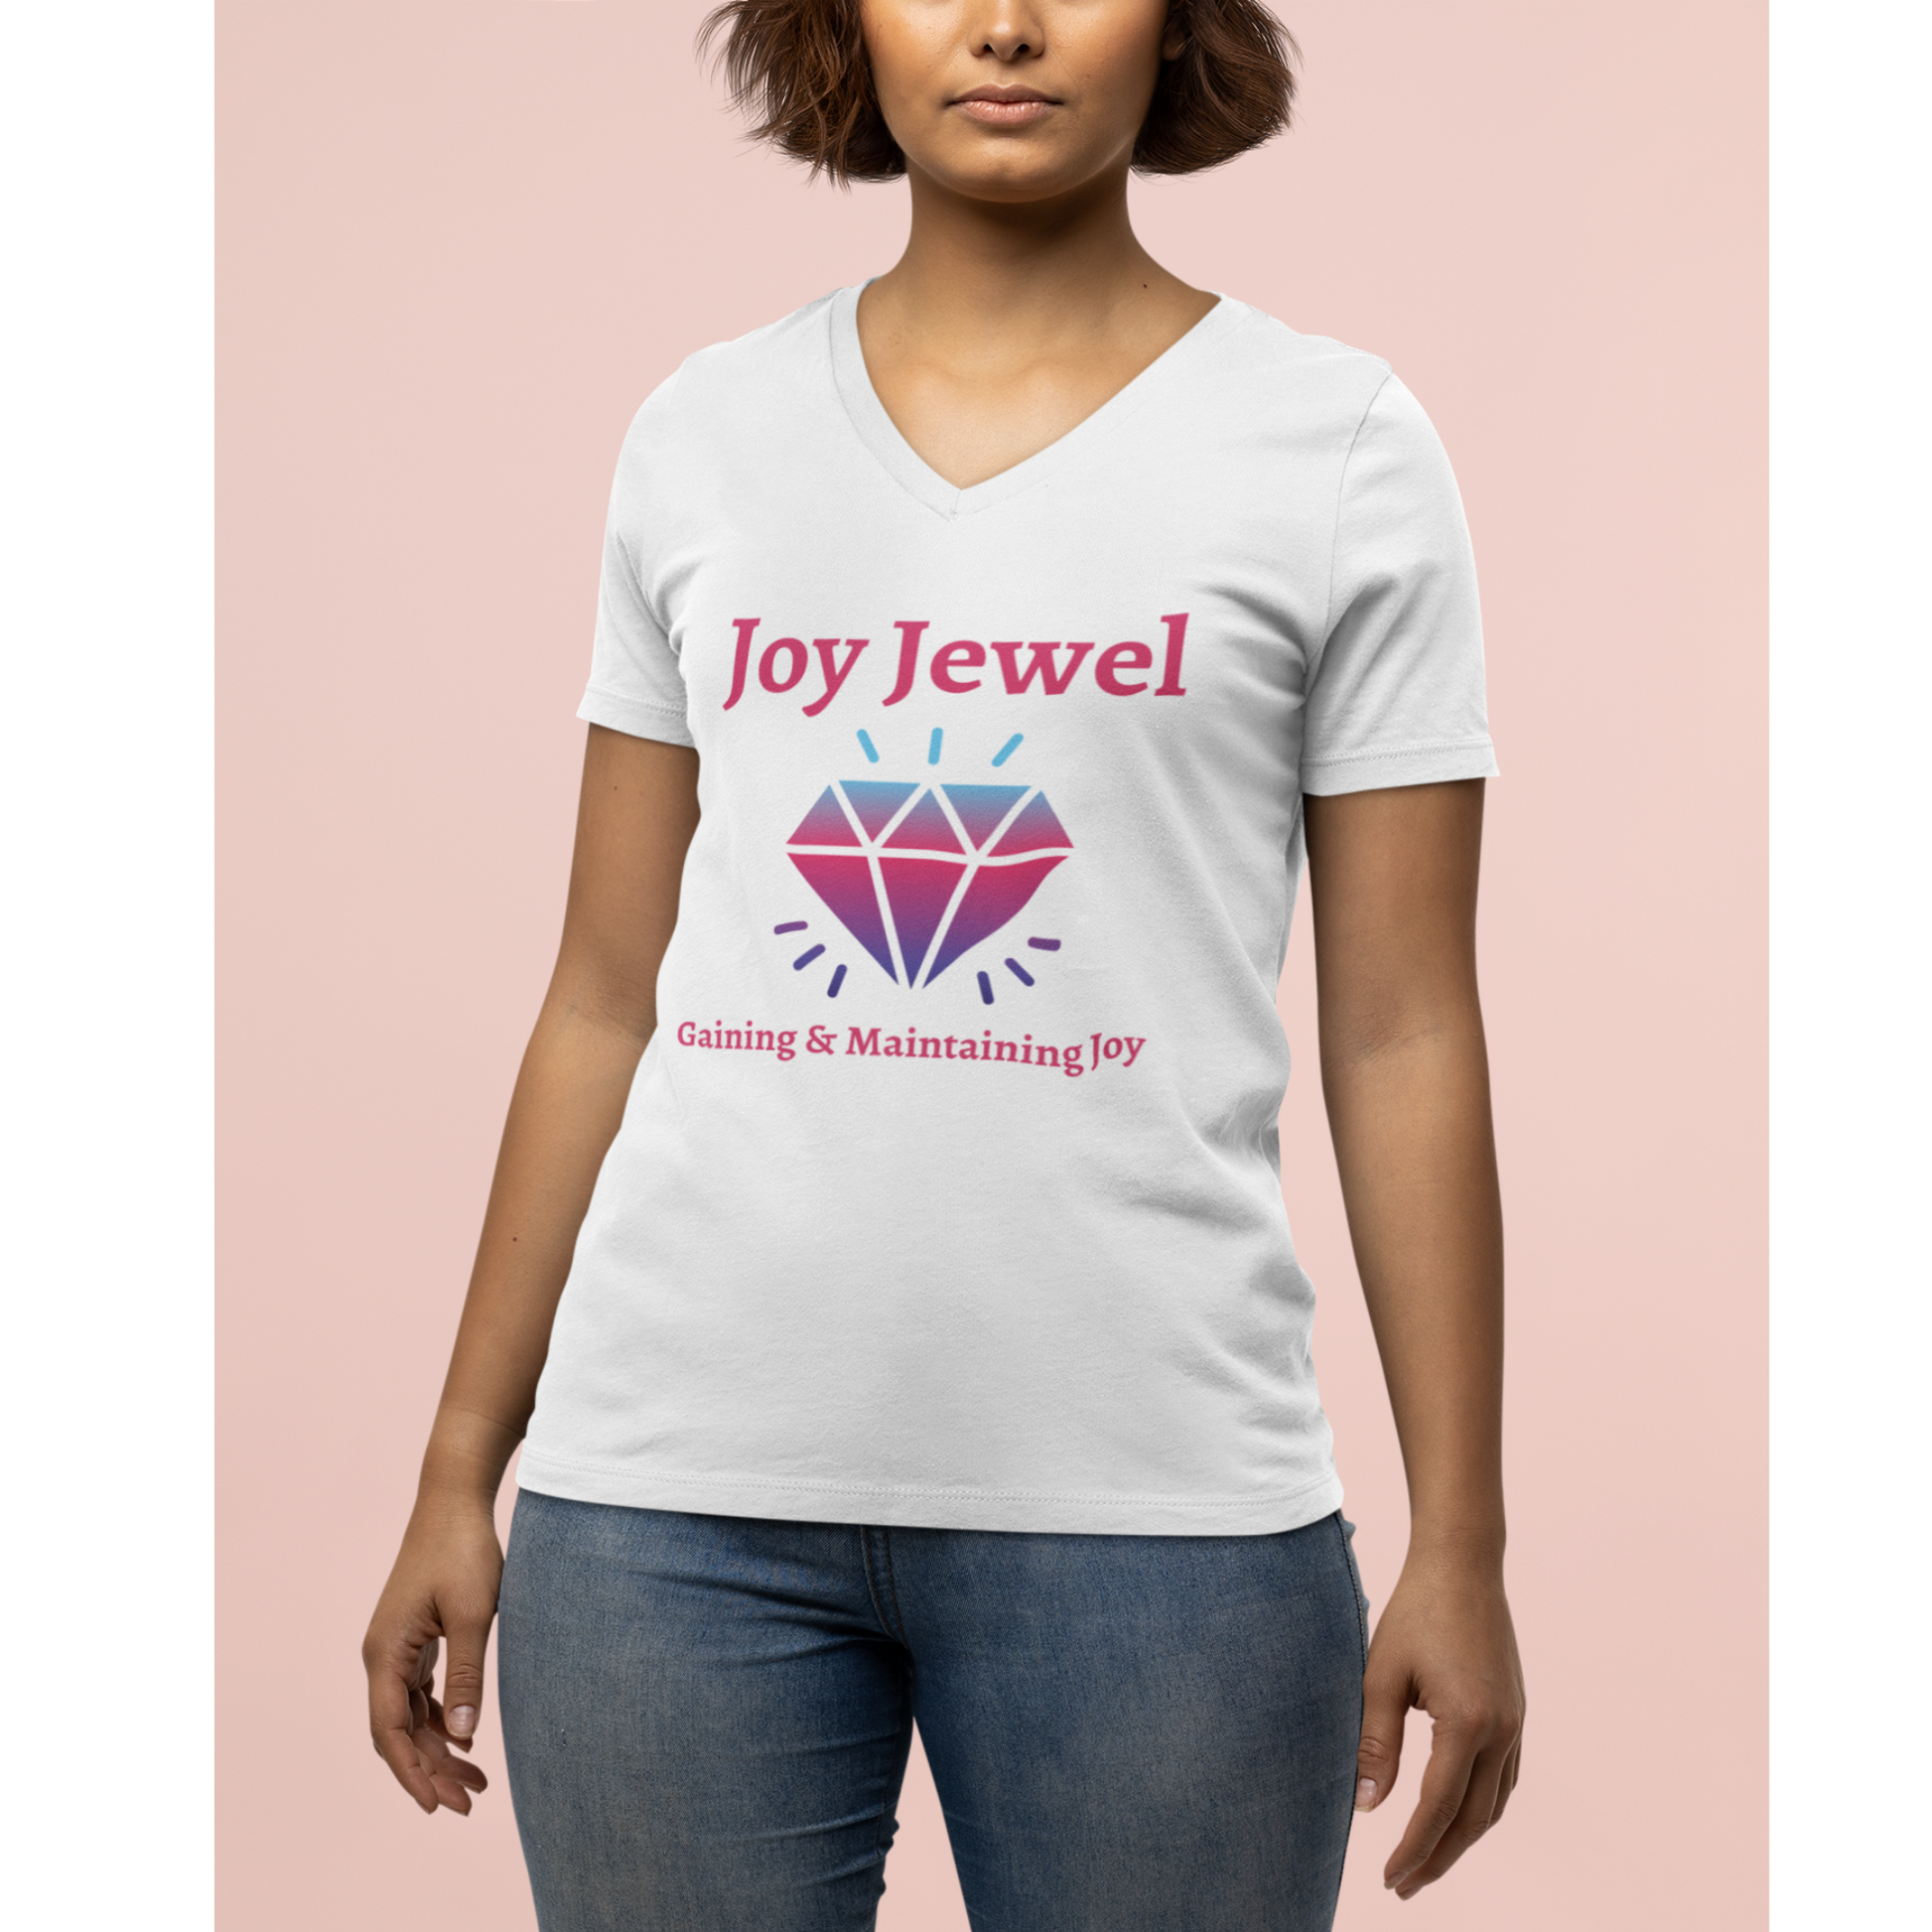 Joy T-Shirt, Joy of the Lord Tee, Protecting my Joy Tee, Protecting my Peace V-Neck